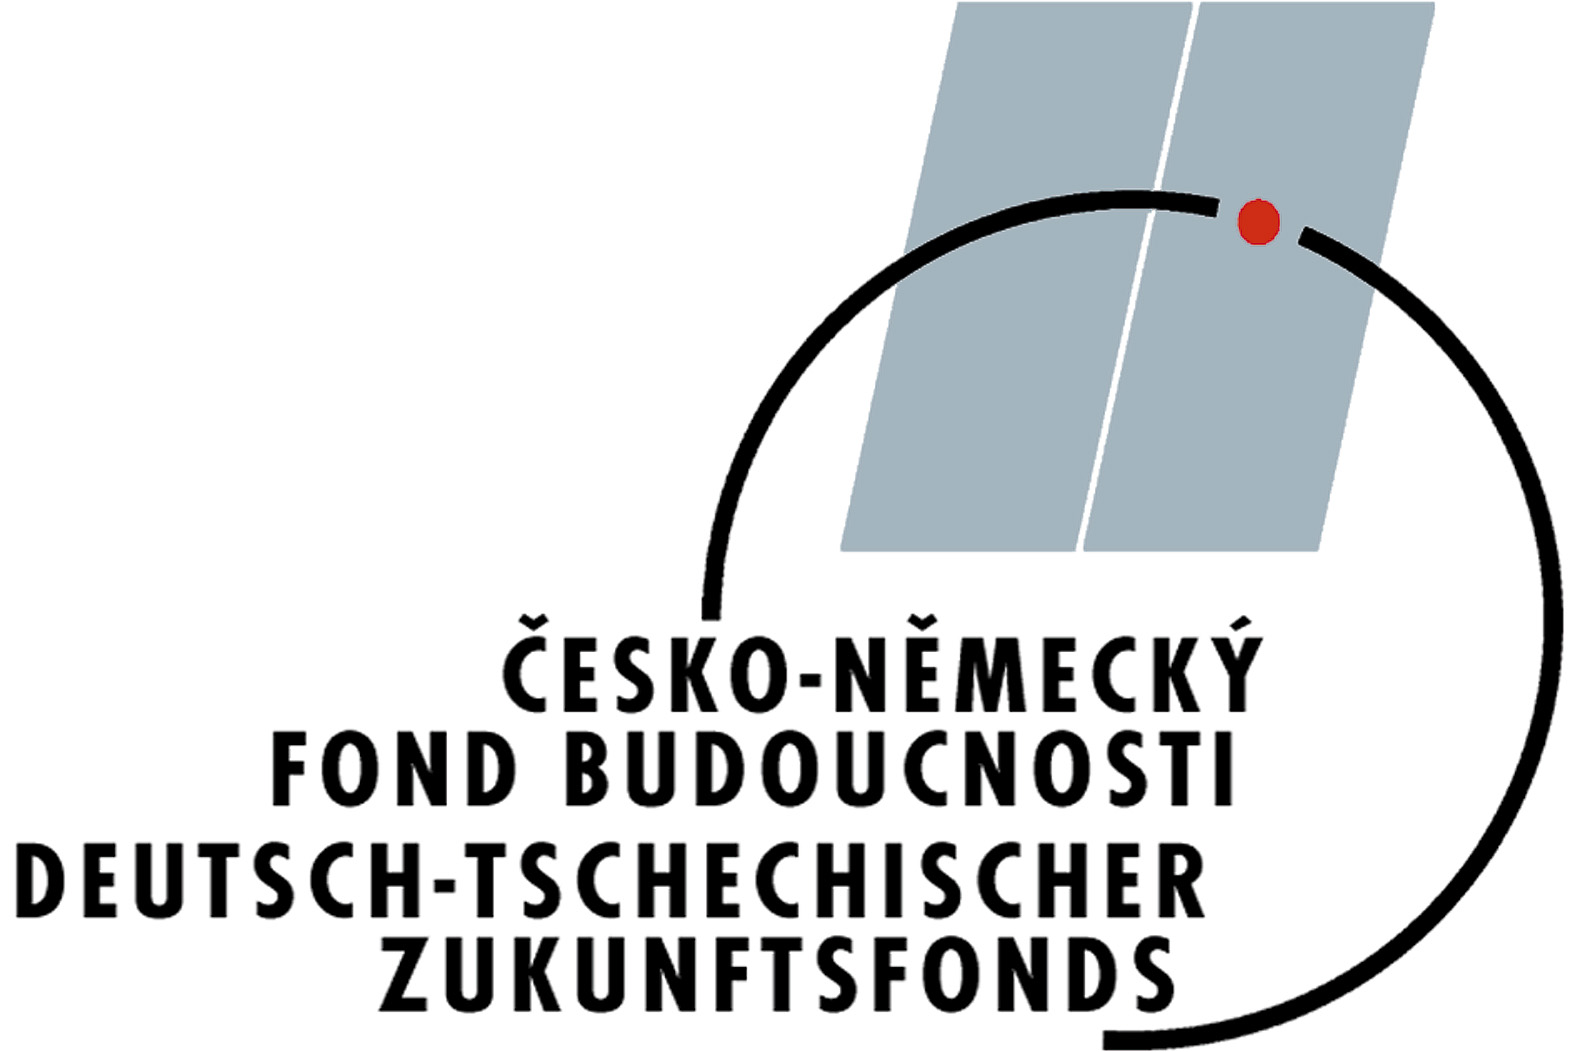 Featured image for “Projekty realizované ve spolupráci s Česko-německým fondem budoucnosti”